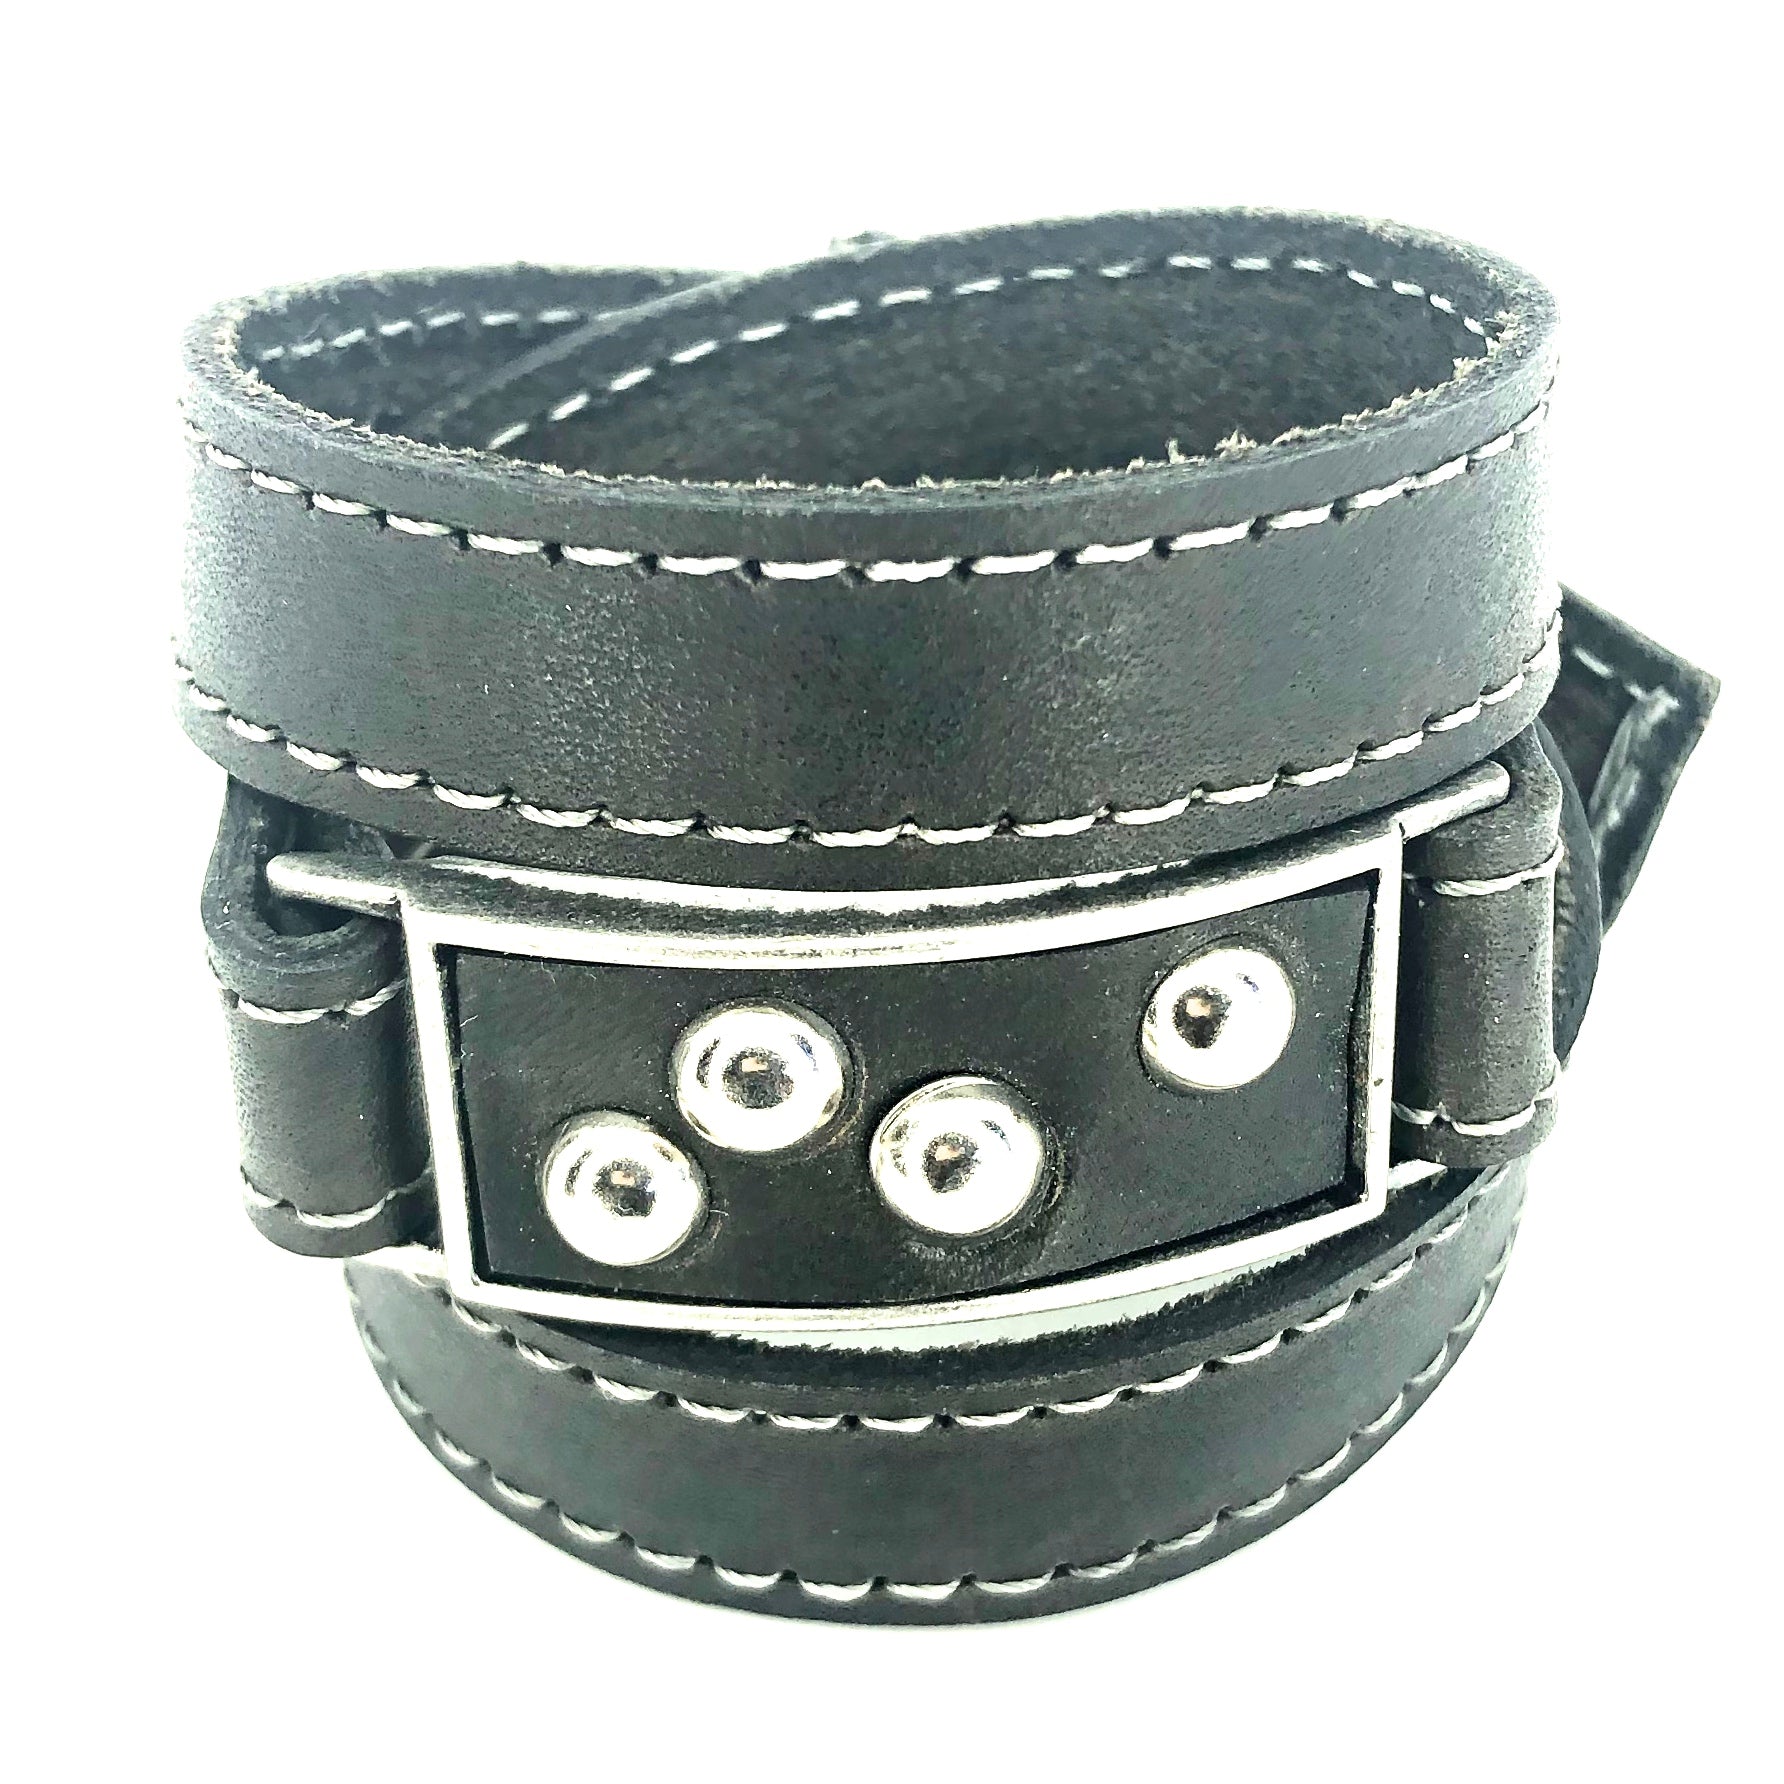 Polo Wraparound Bracelet - by NYet Jewelry